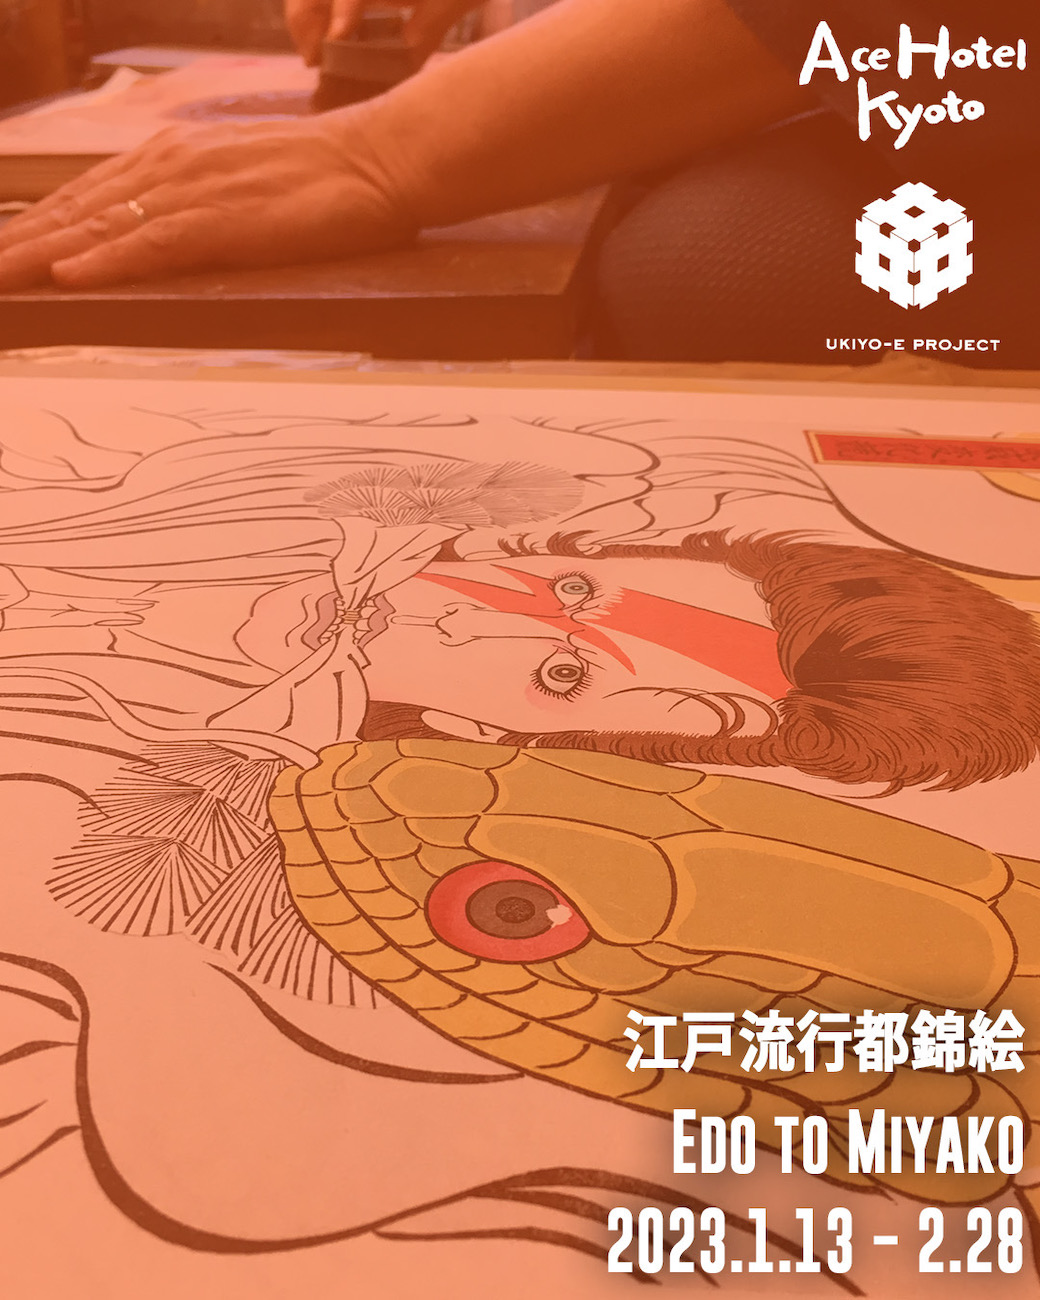 Edo to Miyako gallery promo - January 13 - February 28